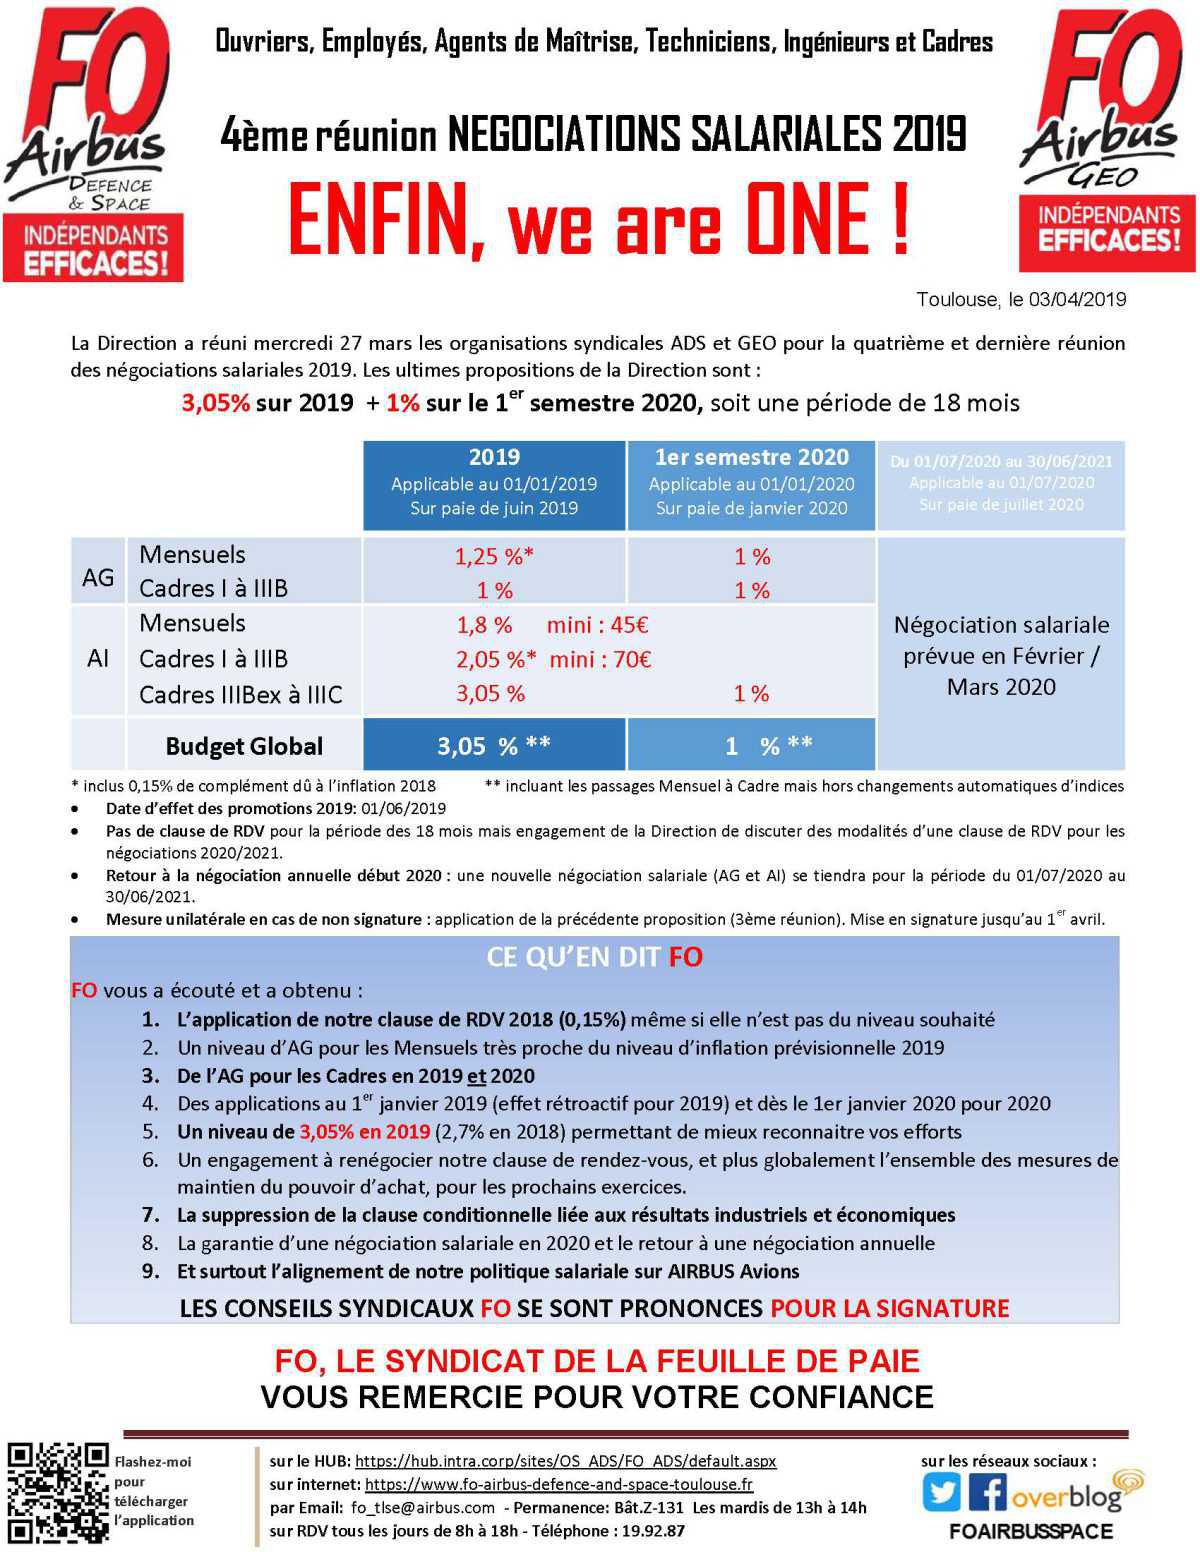 4ème Réunion de négociations salariales 2019 : enfin, we are one!